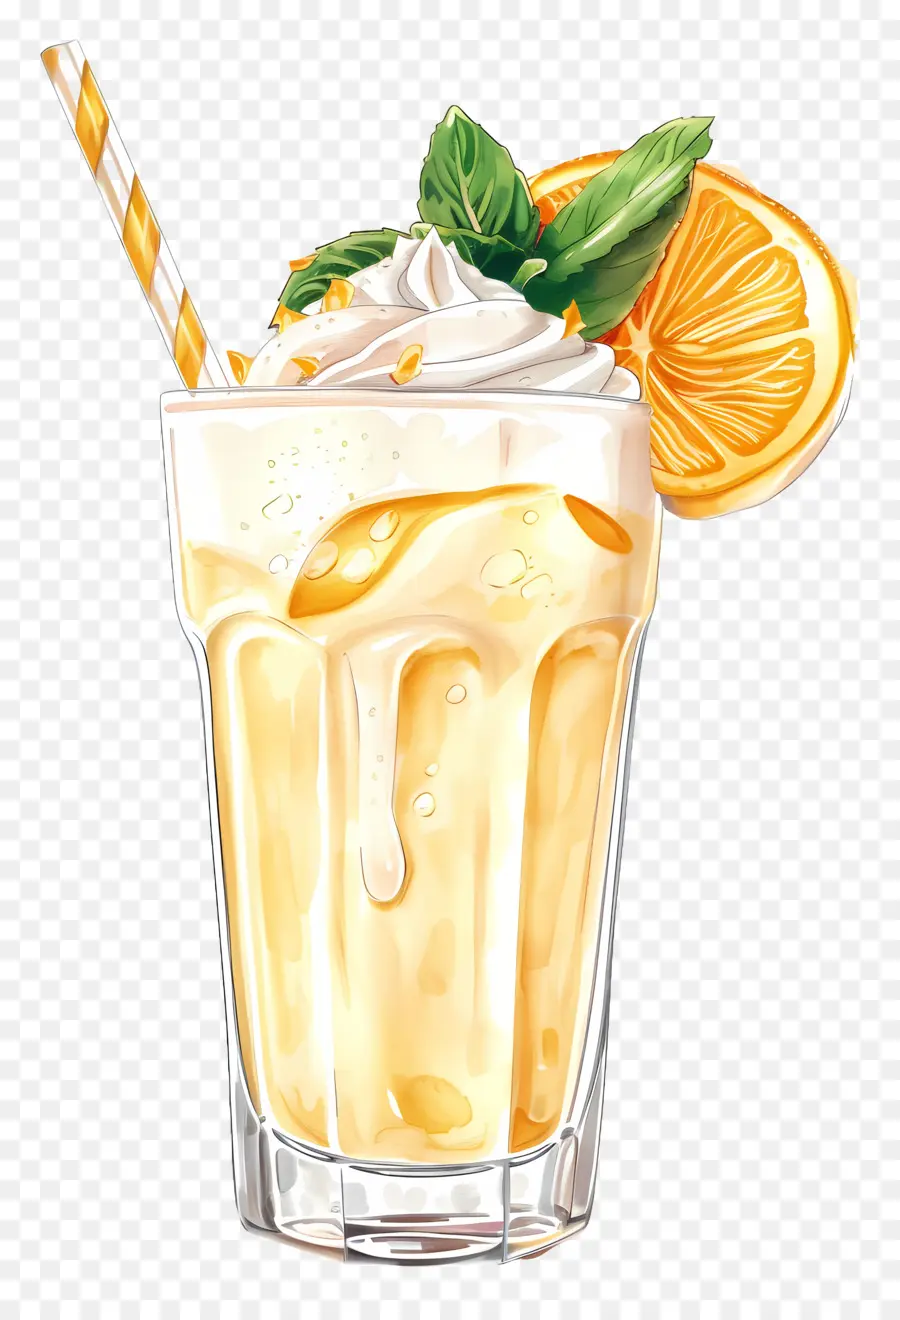 zitronenscheibe - Cremiges orange Getränk mit Zitronenscheibe